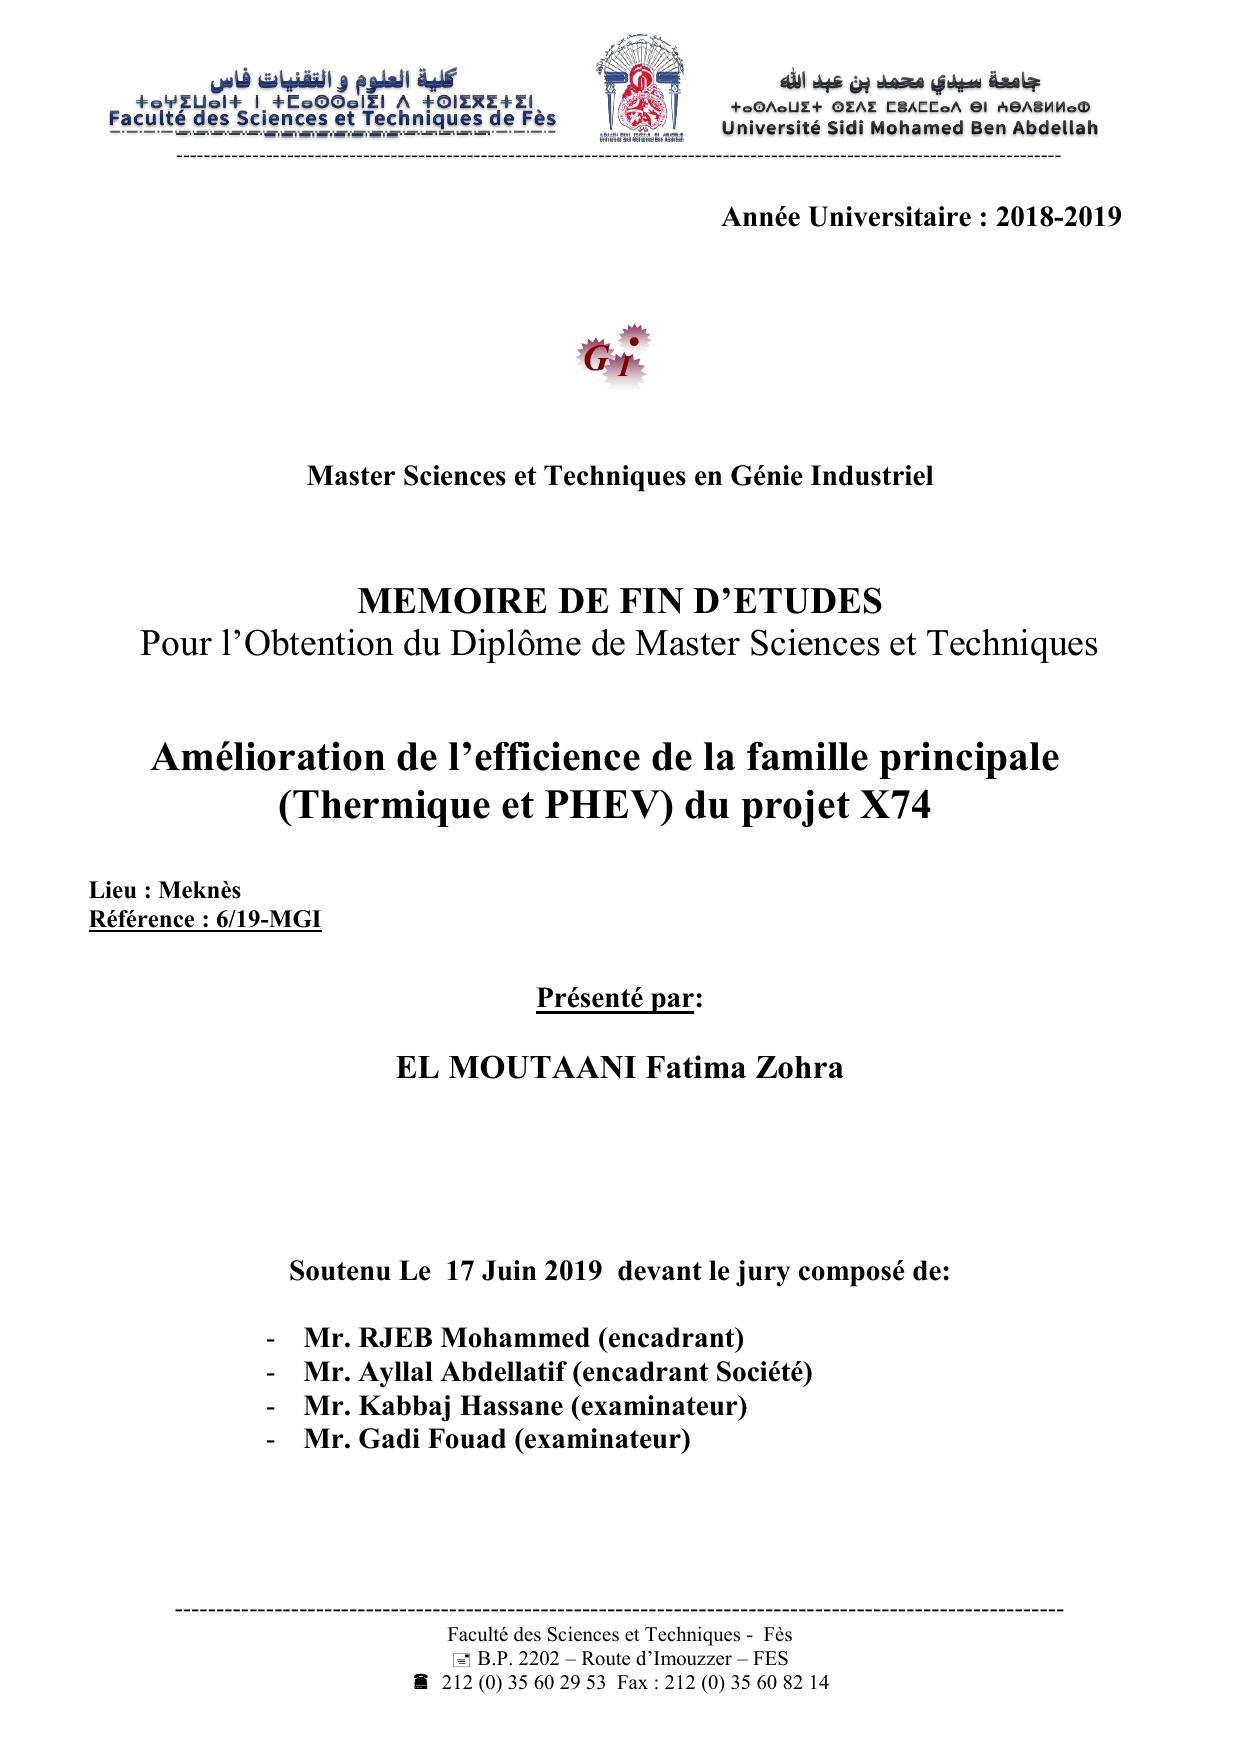 Amélioration de l’efficience de la famille principale (Thermique et PHEV) du projet X74